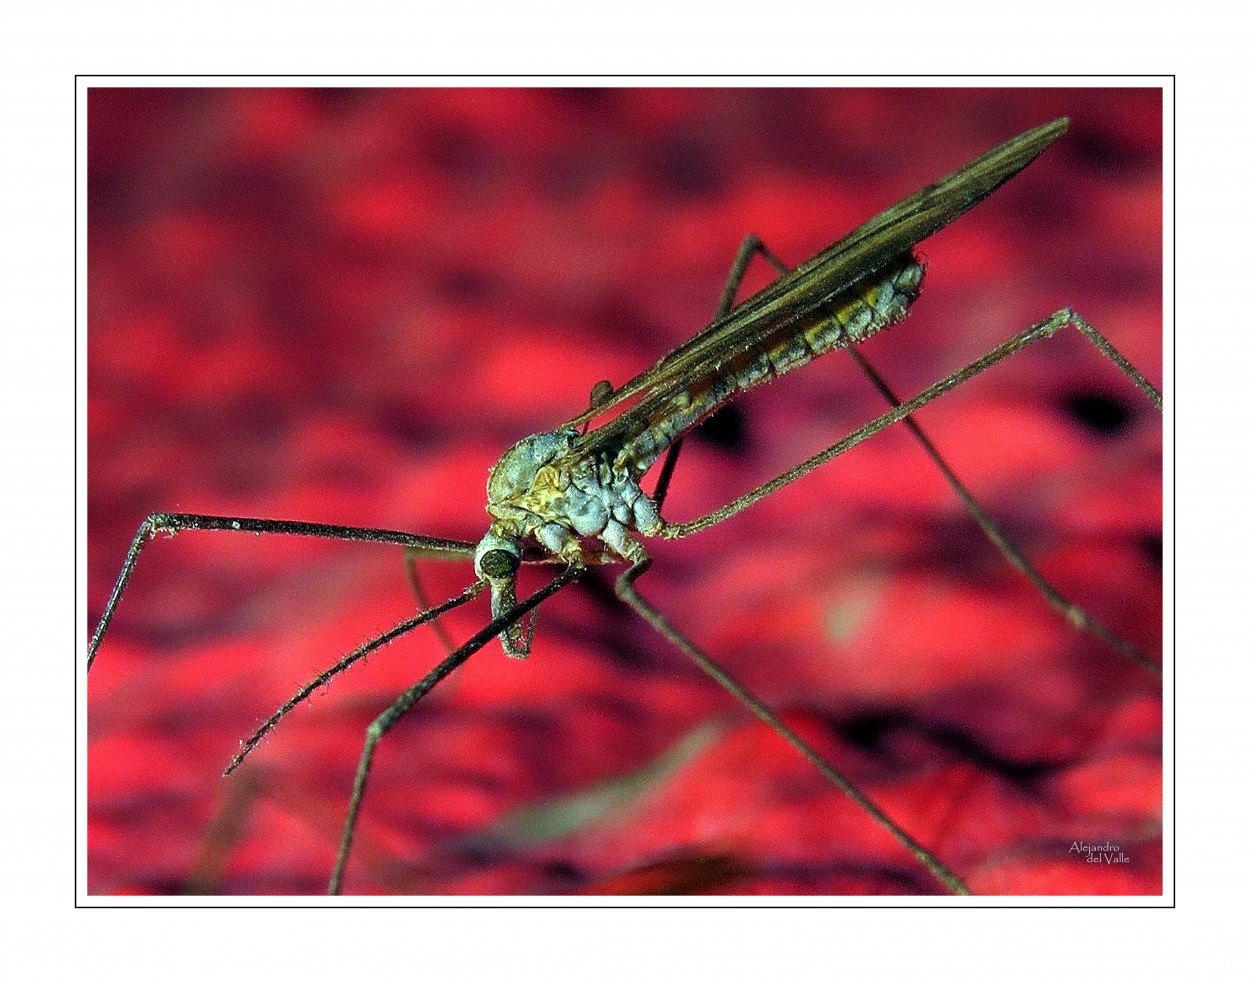 "Como un mosquito gigante" de Alejandro del Valle